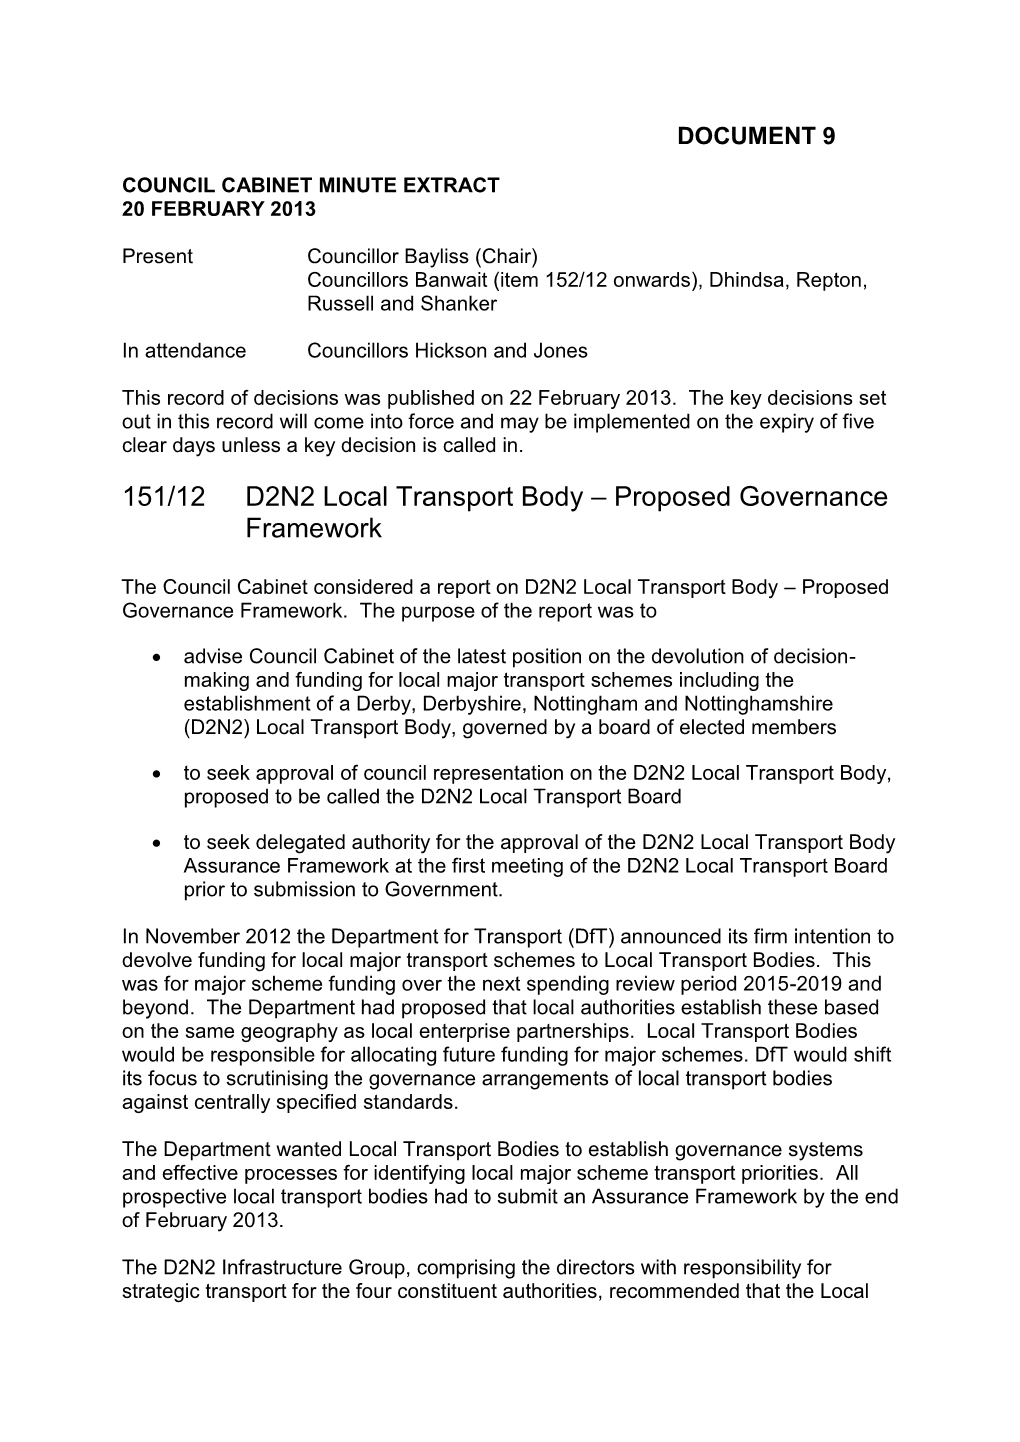 151/12 D2N2 Local Transport Body – Proposed Governance Framework